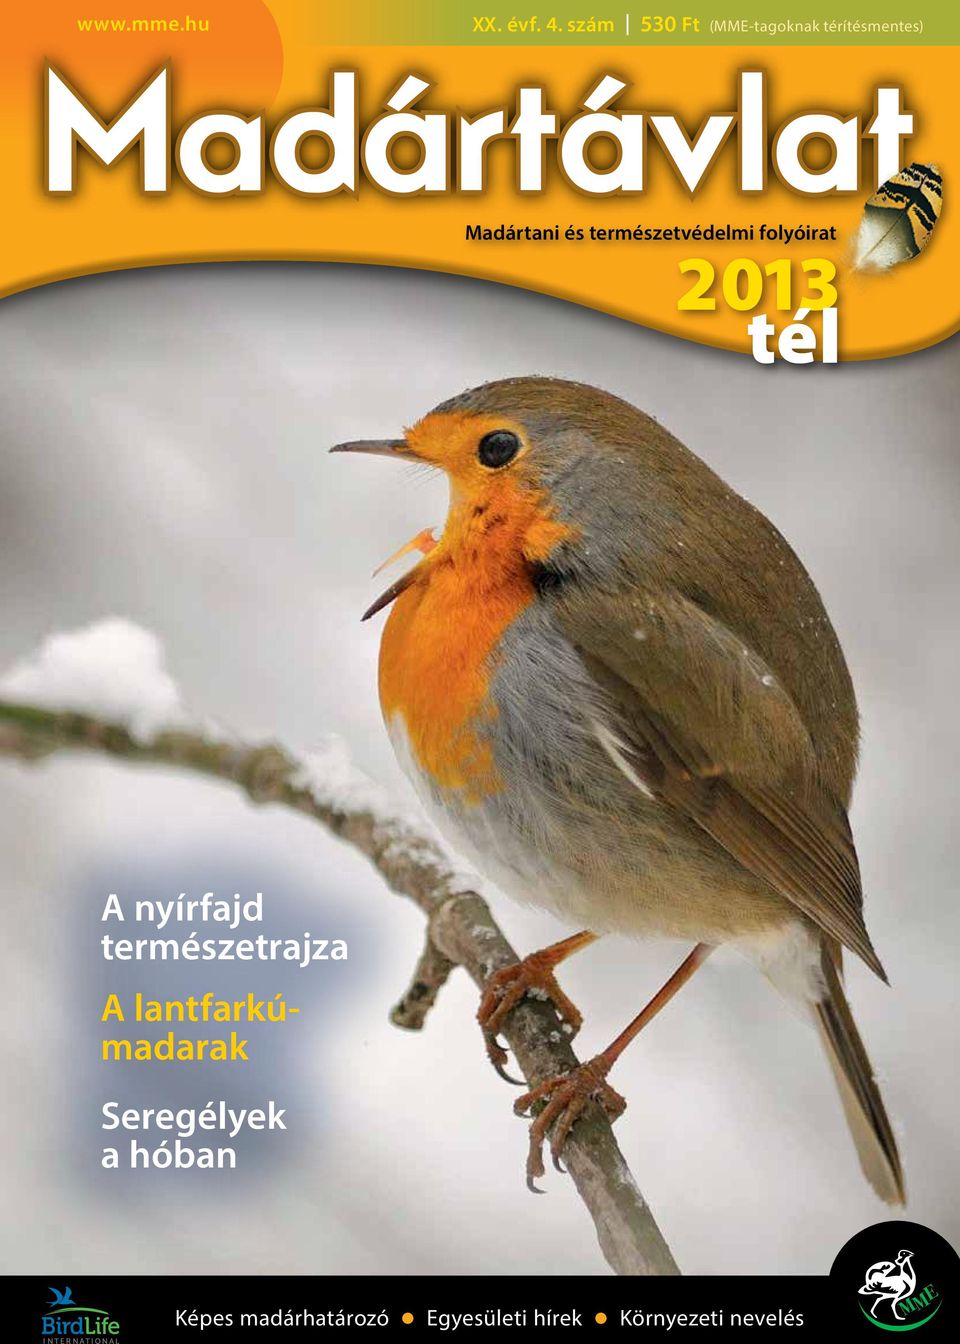 Madártani és természetvédelmi folyóirat 2013 tél A nyírfajd